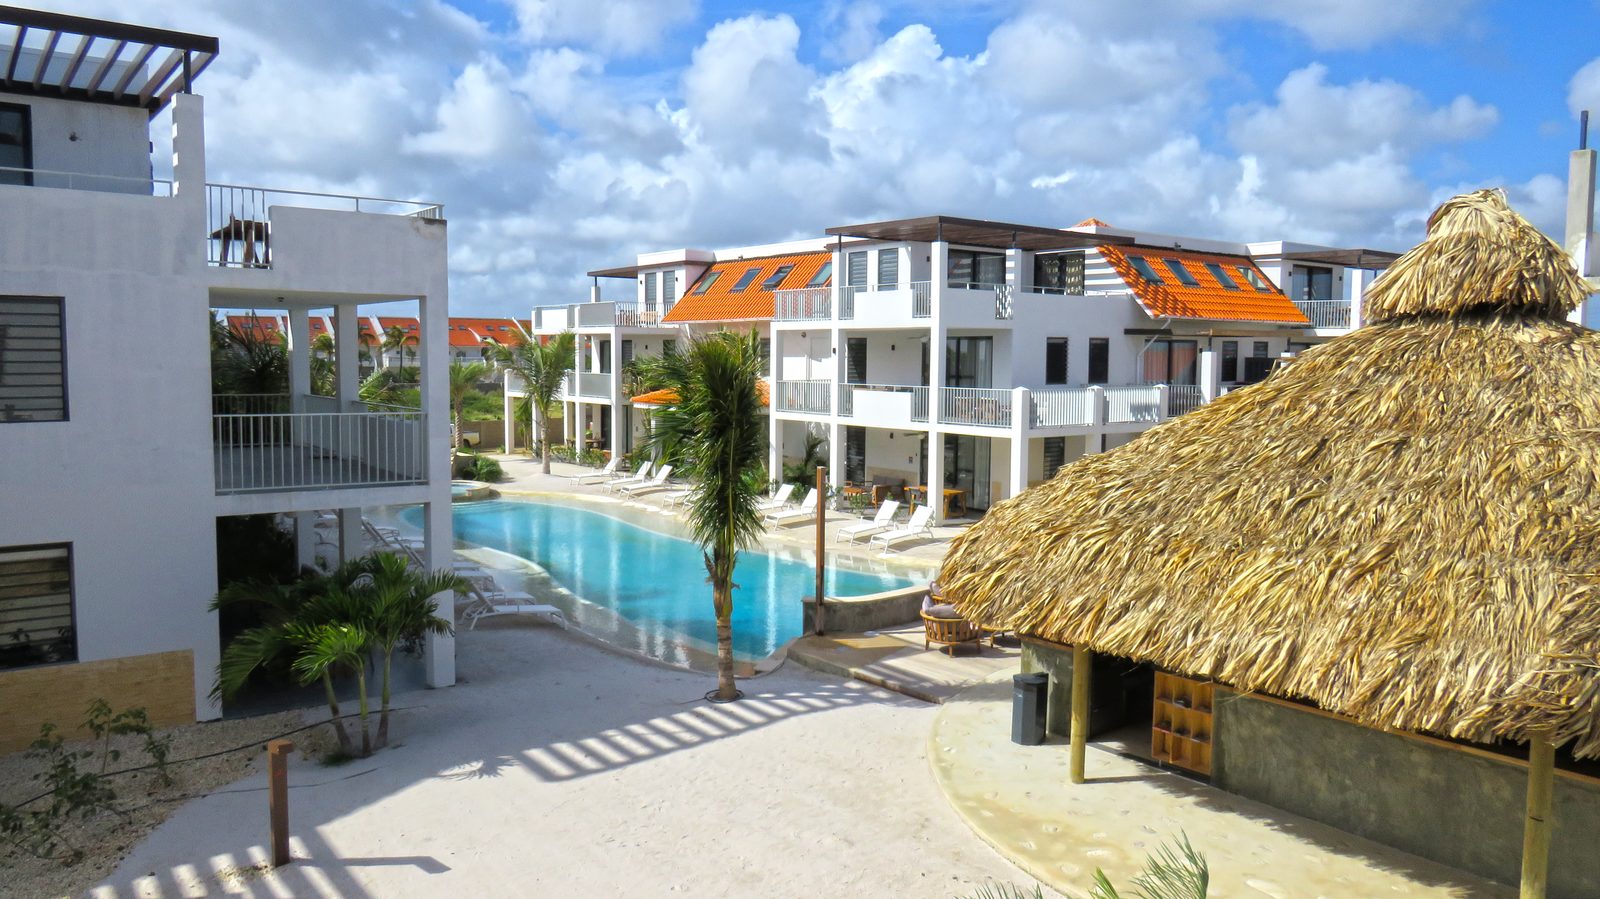 Mientras estés en Bonaire, puedes quedarte en Resort Bonaire. Lujosos apartamentos equipados con todas las comodidades que puedas desear. ¡Ve nuestros alojamientos disponibles!
